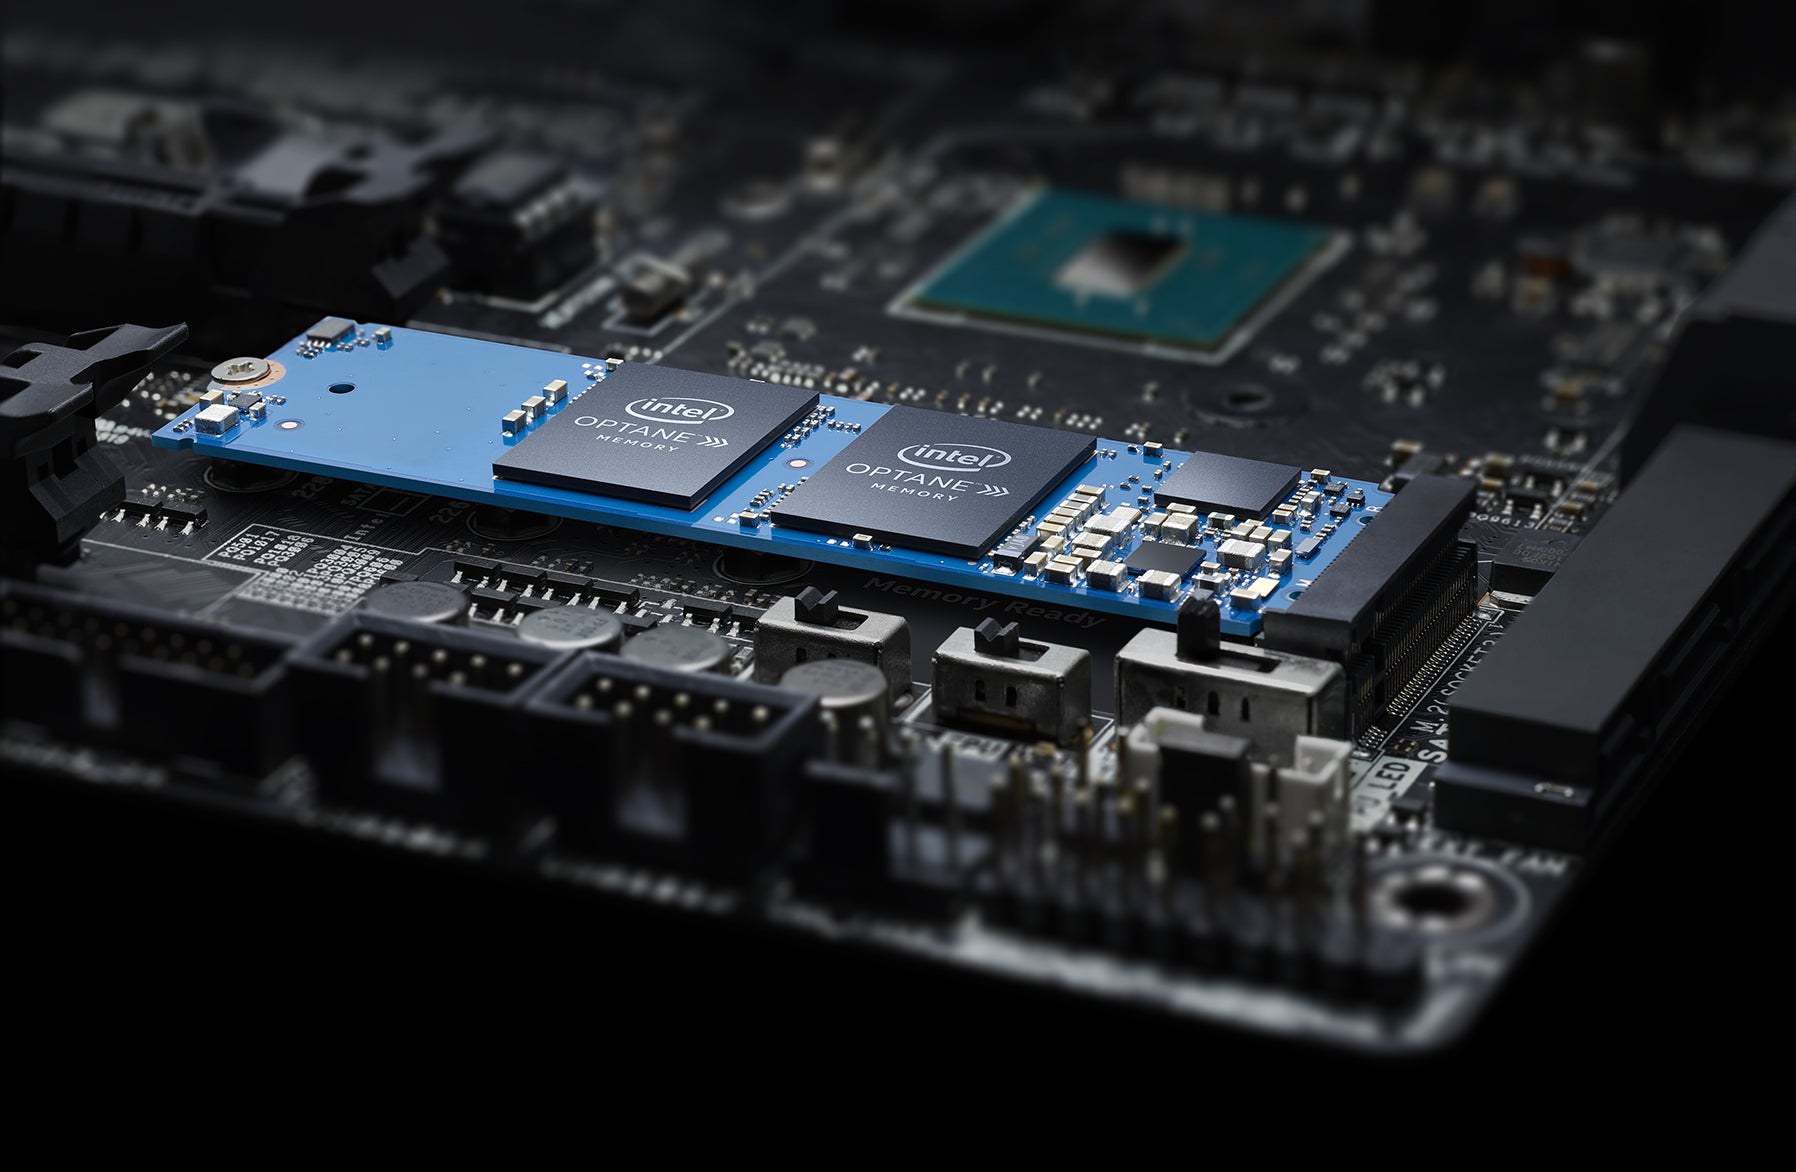 Procesor i5-11400 ponúka podporu Intel Optane Memory pre najnovšie cachovacie pamäte, ktoré dokážu zrýchliť váš platňový disk až o niekoľko desiatok %.